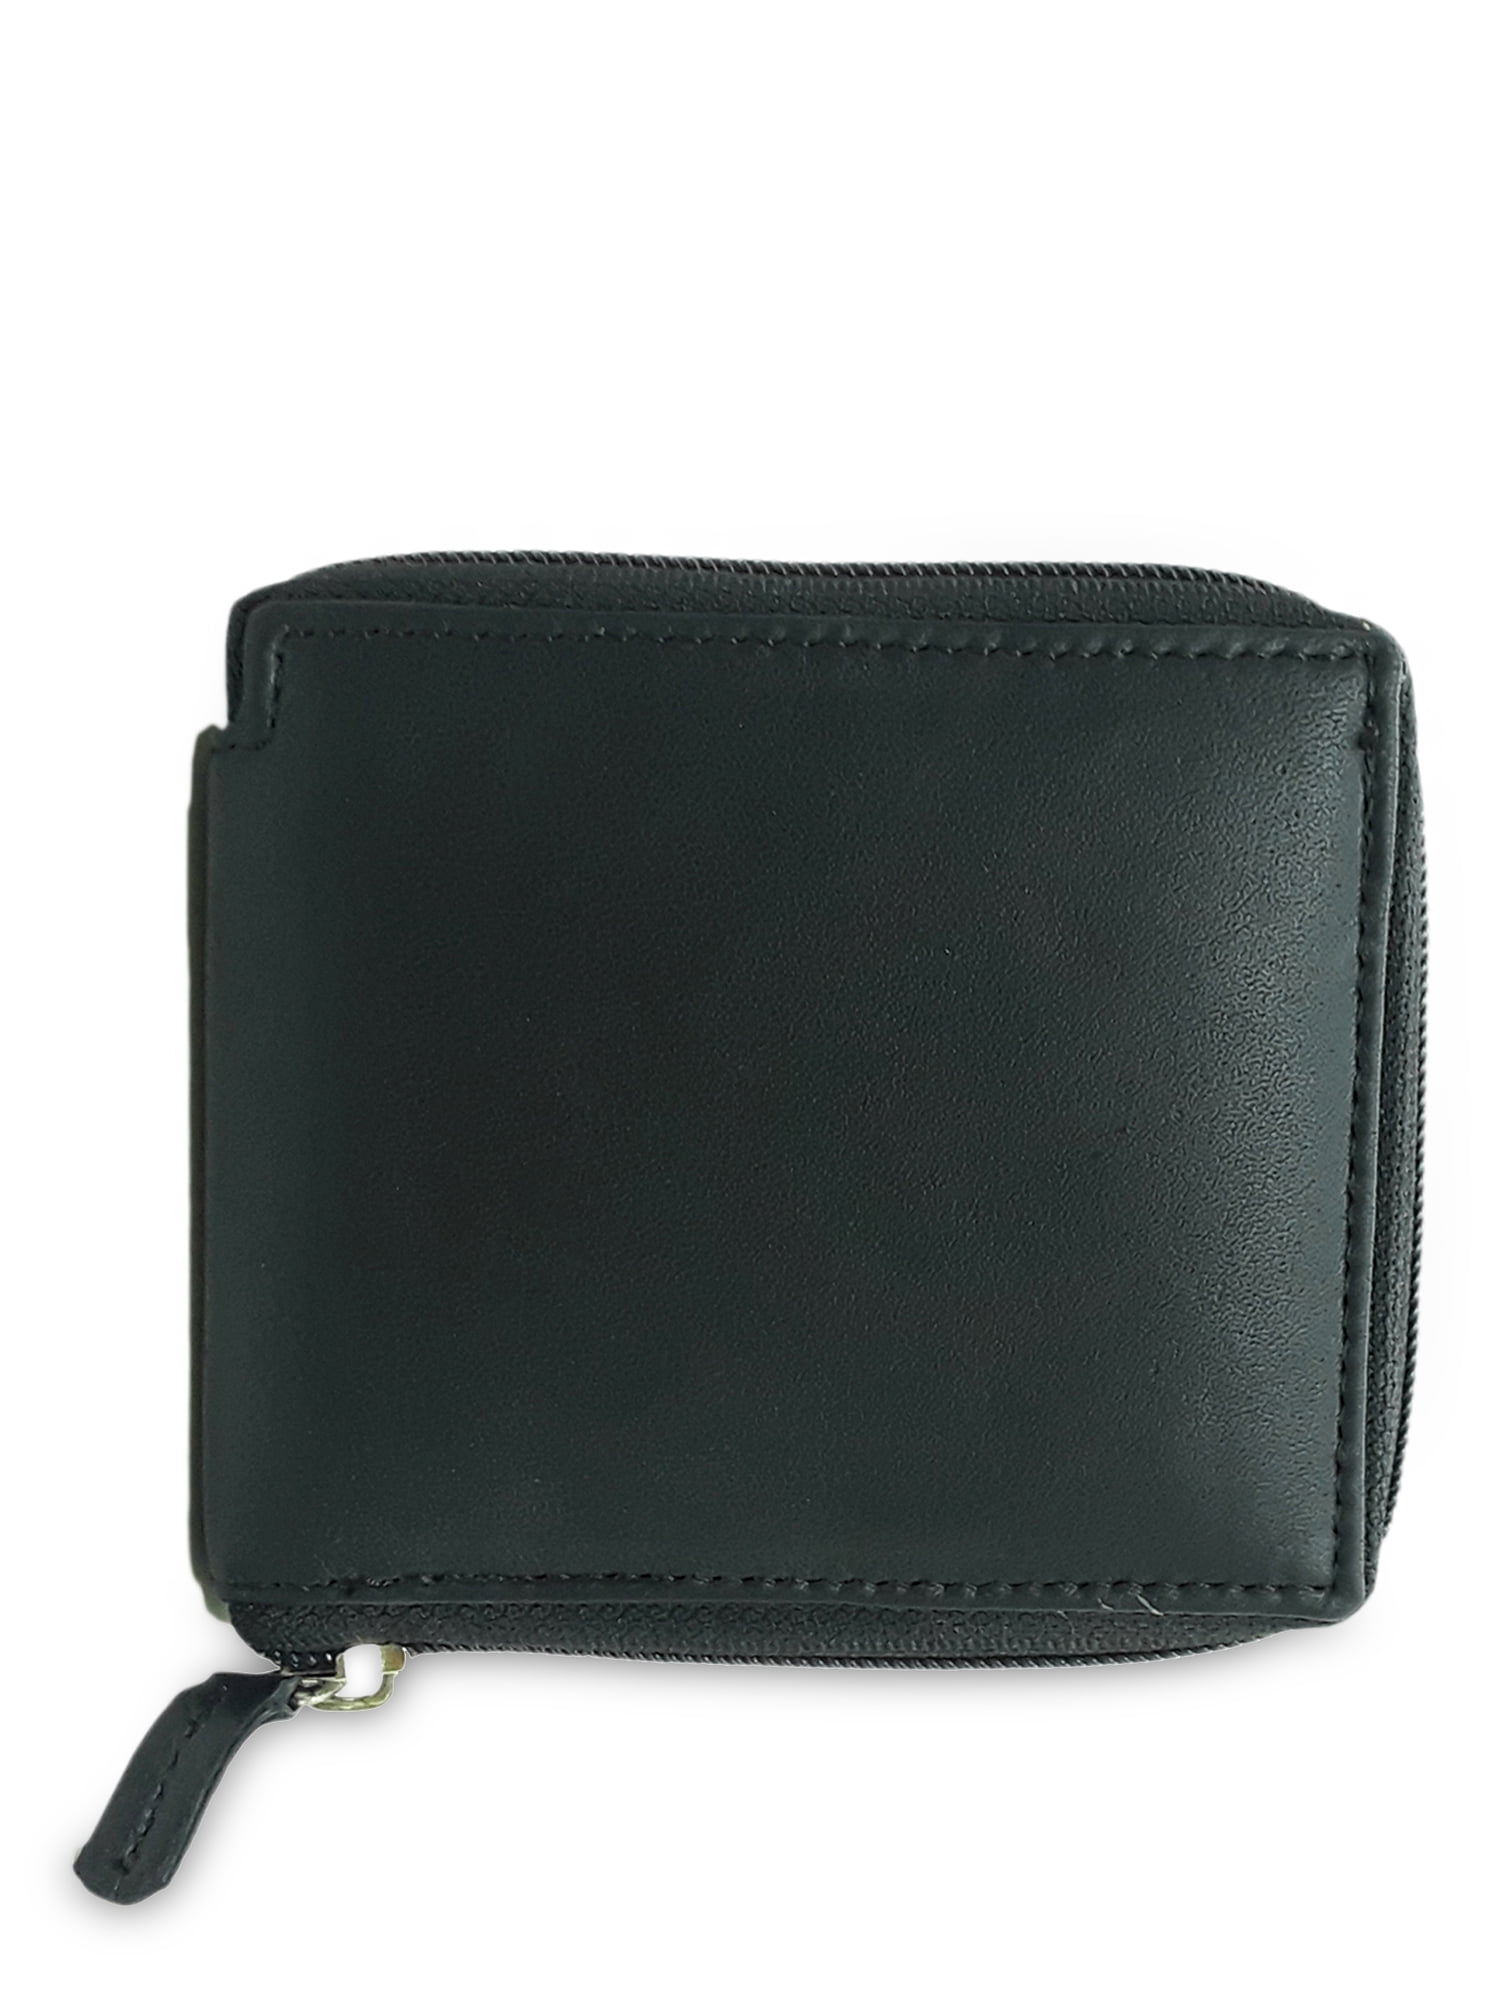 Leather Zip-around wallet - Walmart.com